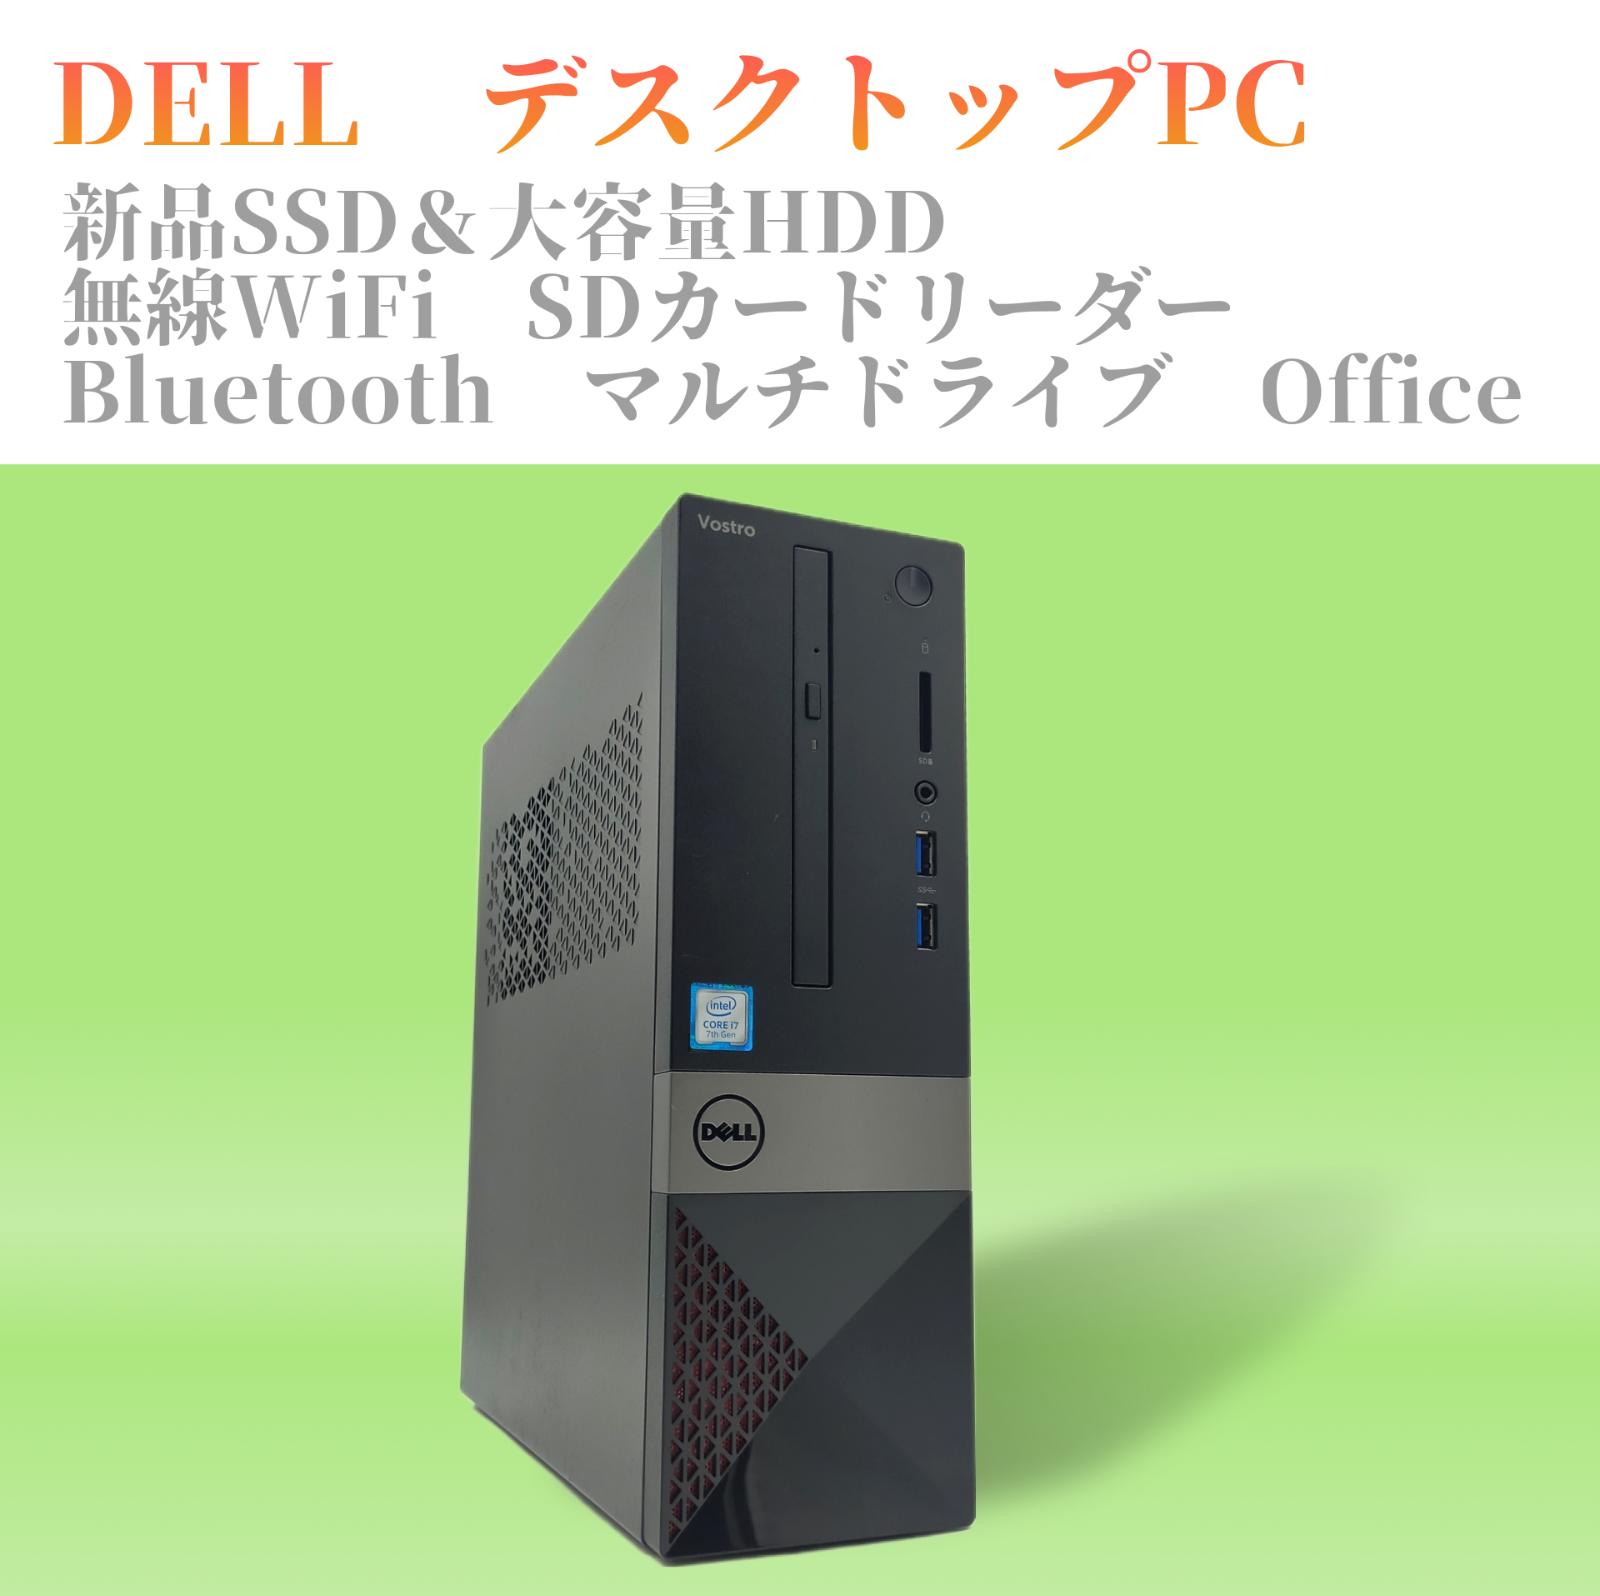 DELL Vostro デスクトップパソコン 中古PC エクセル等搭載 WiFi 